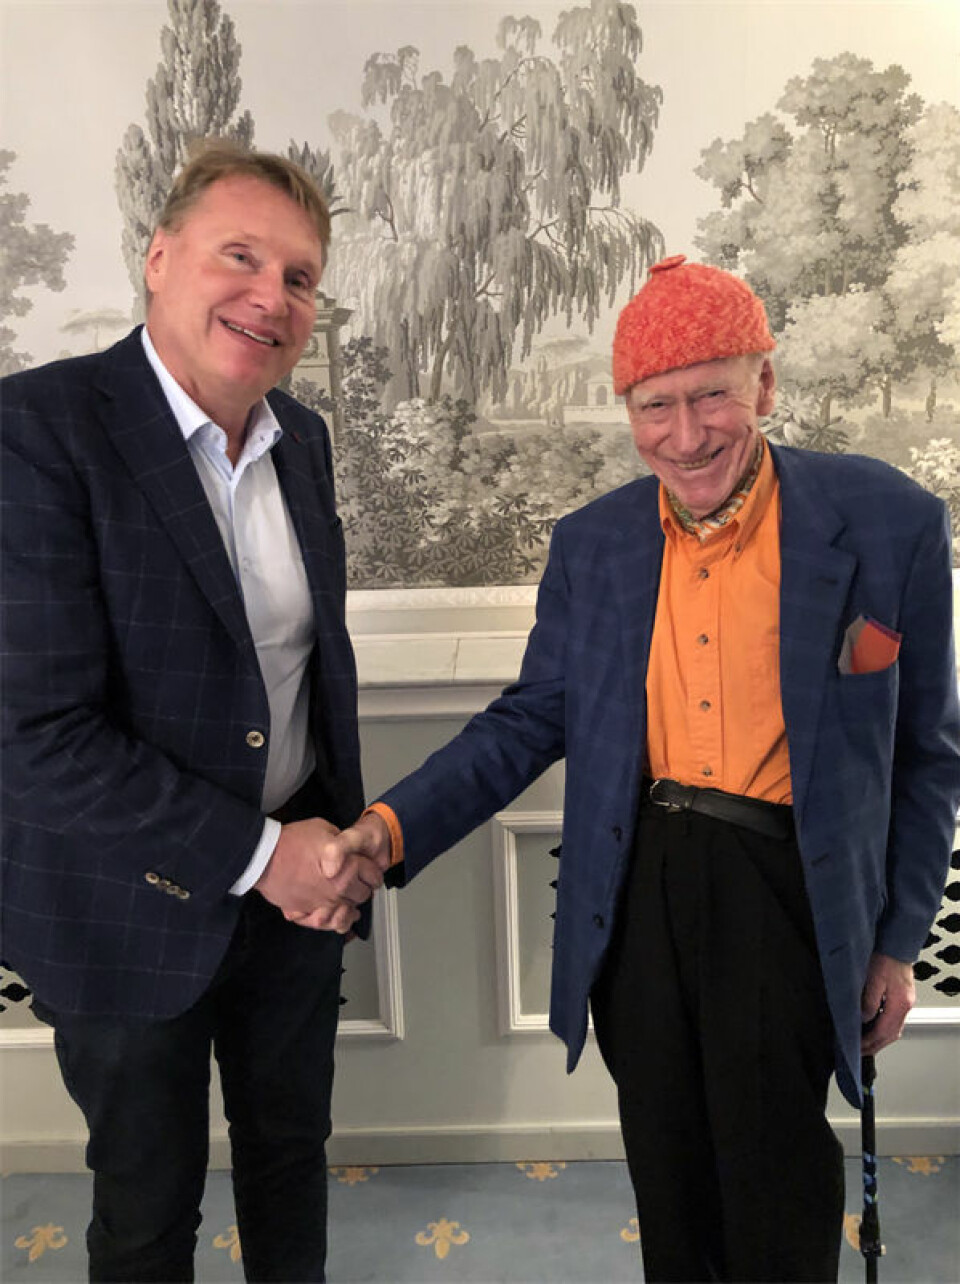 Samarbeidet mellom Karl-Johan Blank, eier og konsernsjef i Jula, og Olav Thon styrkes ytterligere. Foto: Jula